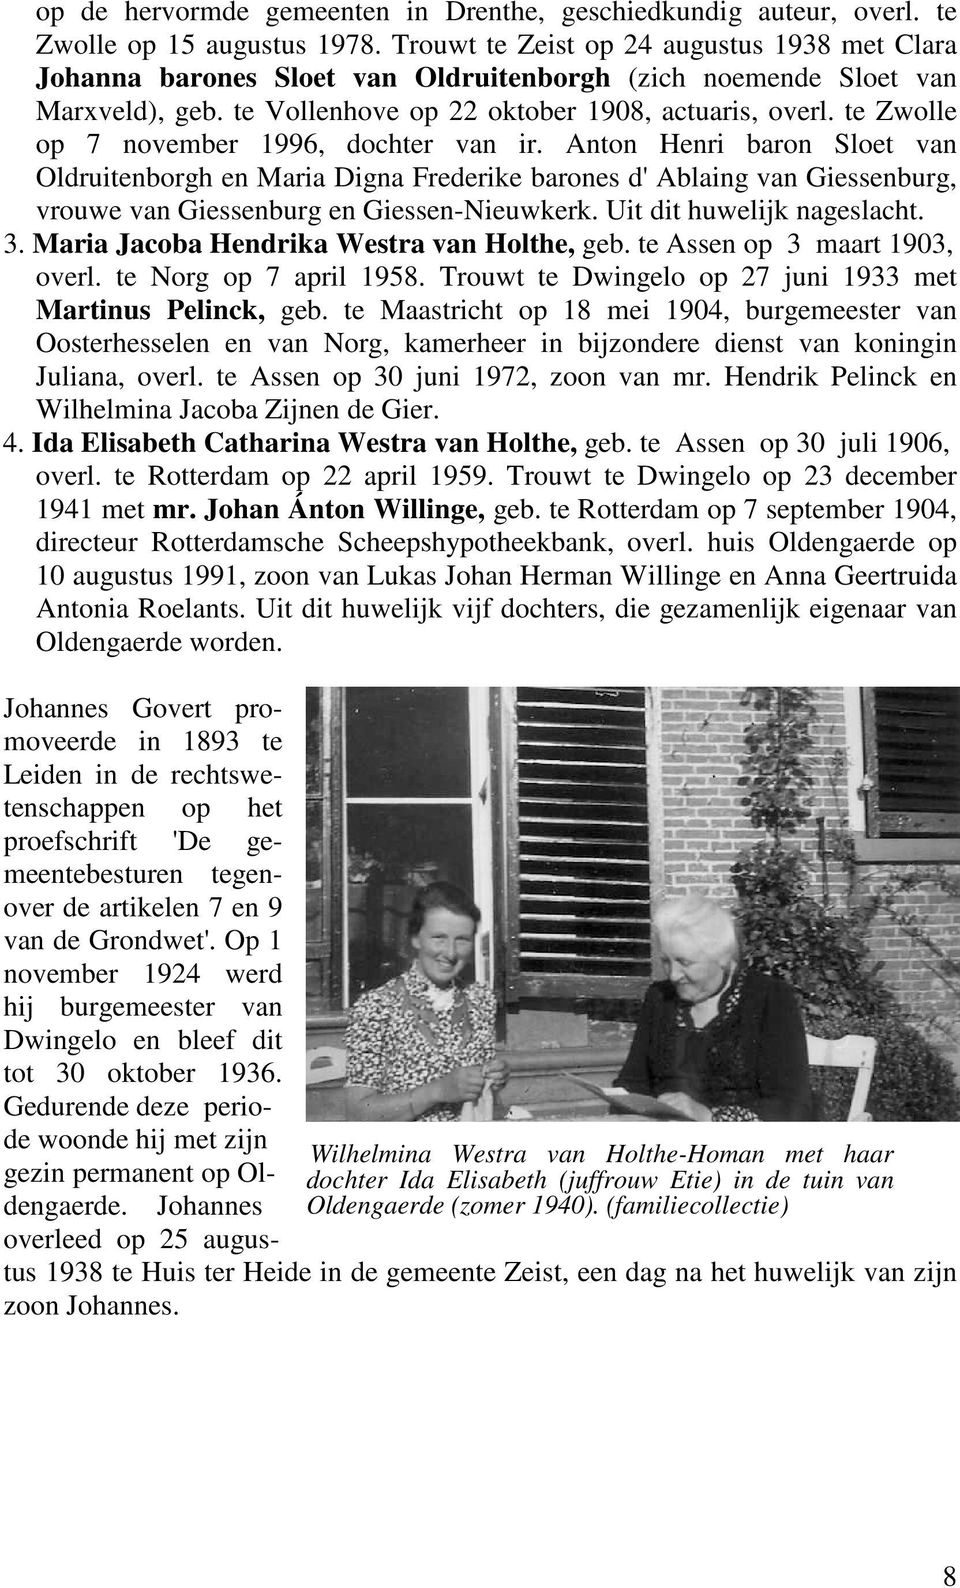 te Zwolle op 7 november 1996, dochter van ir. Anton Henri baron Sloet van Oldruitenborgh en Maria Digna Frederike barones d' Ablaing van Giessenburg, vrouwe van Giessenburg en Giessen-Nieuwkerk.